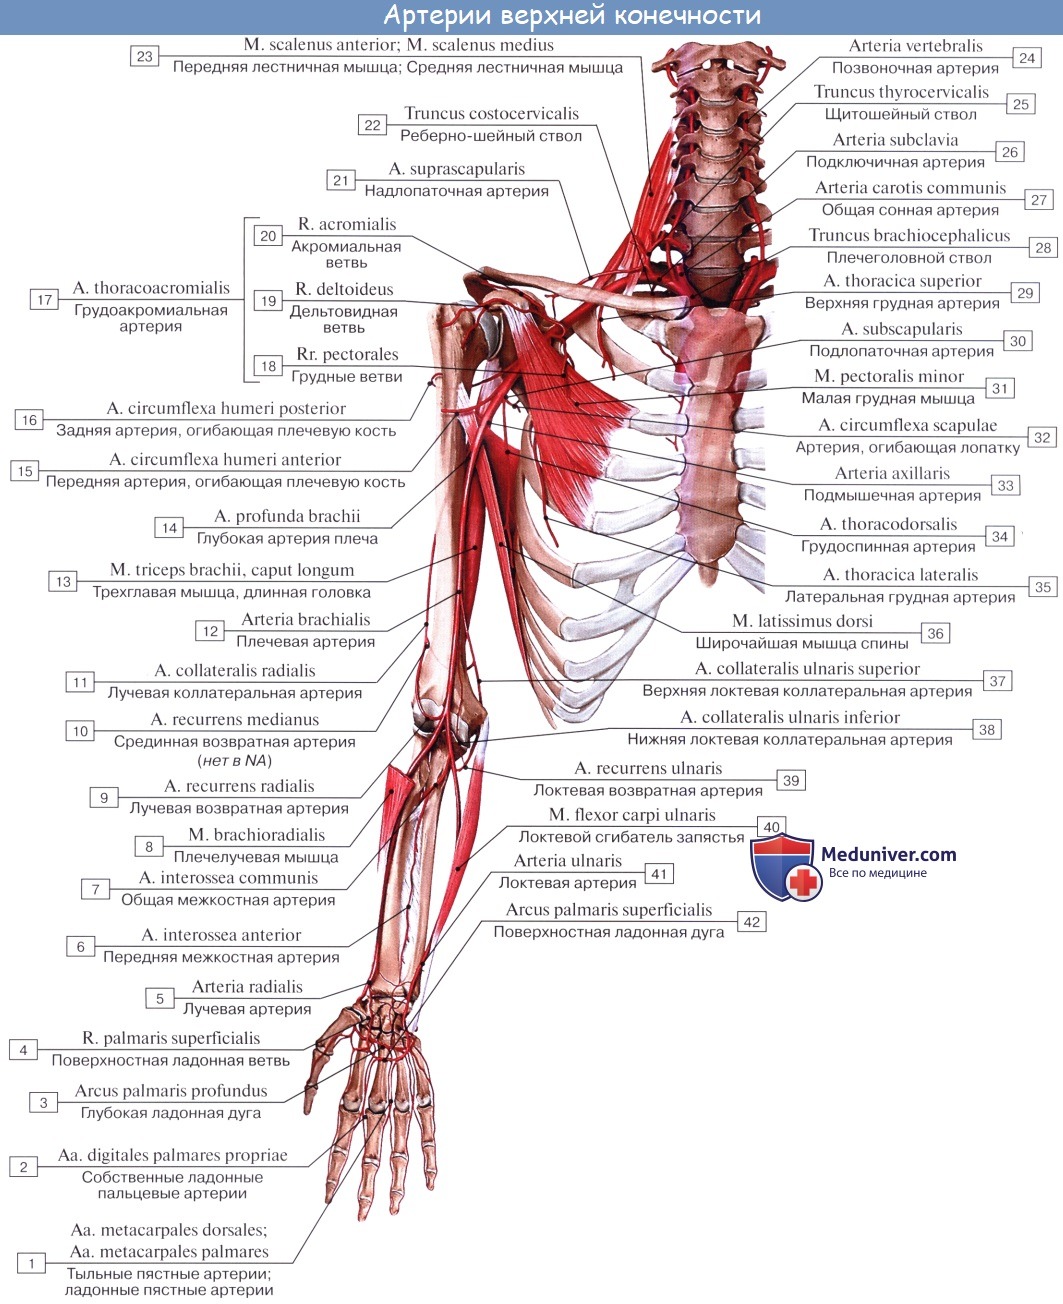 Анатомия: Плечевая артерия. Ветви плечевой артерии: глубокая артерия плеча, верхняя и нижняя локтевая коллатеральная артерия